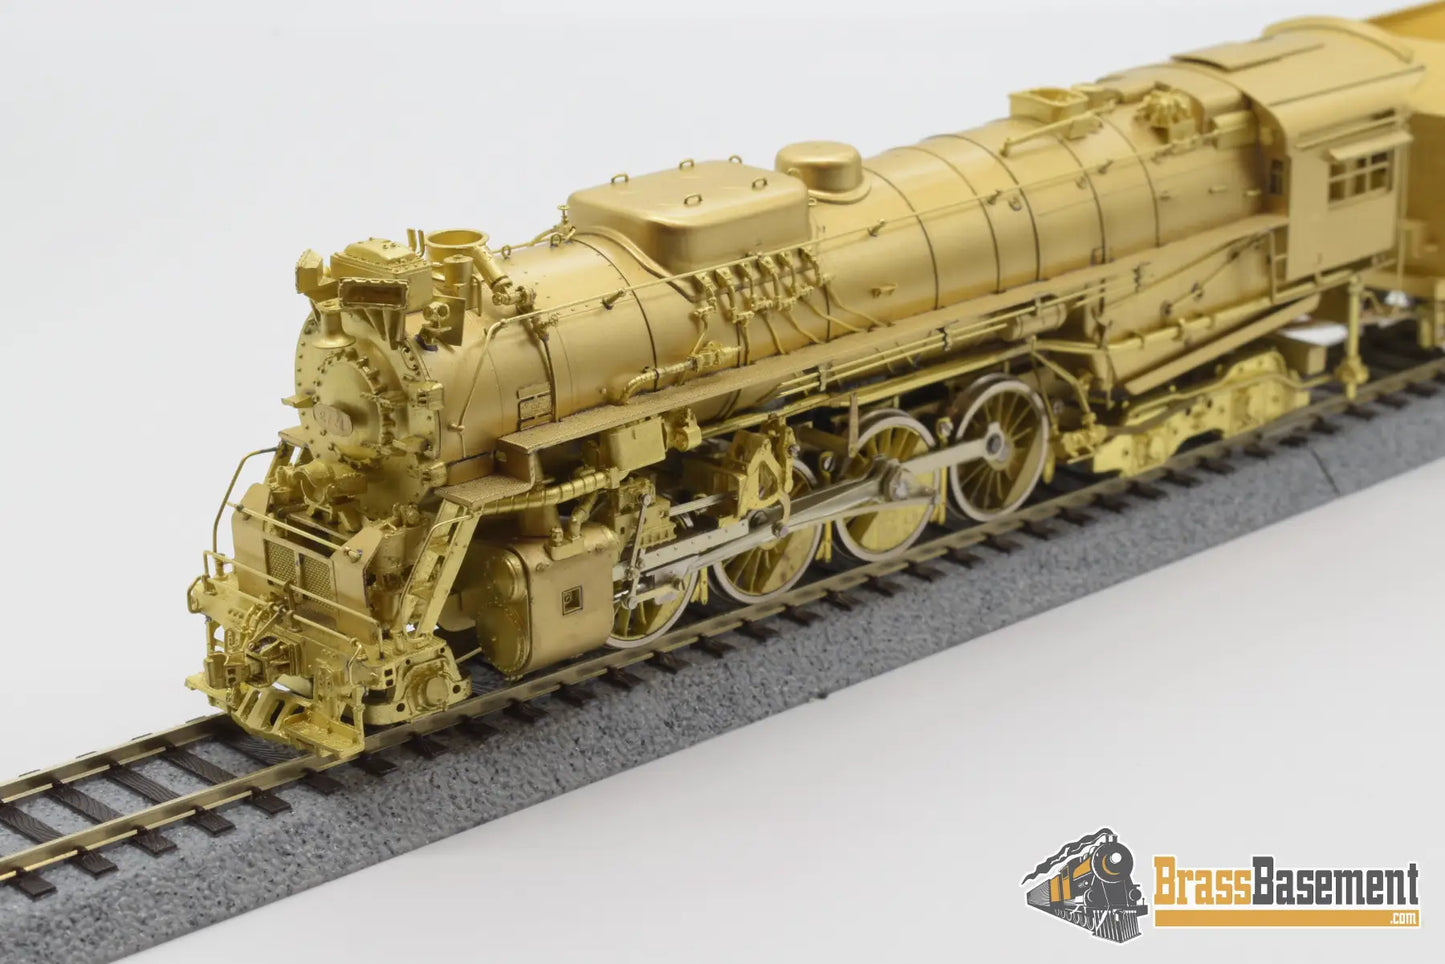 Ho Brass - Key Imports Chesapeake & Ohio K - 4 2 - 8 - 4 Steam